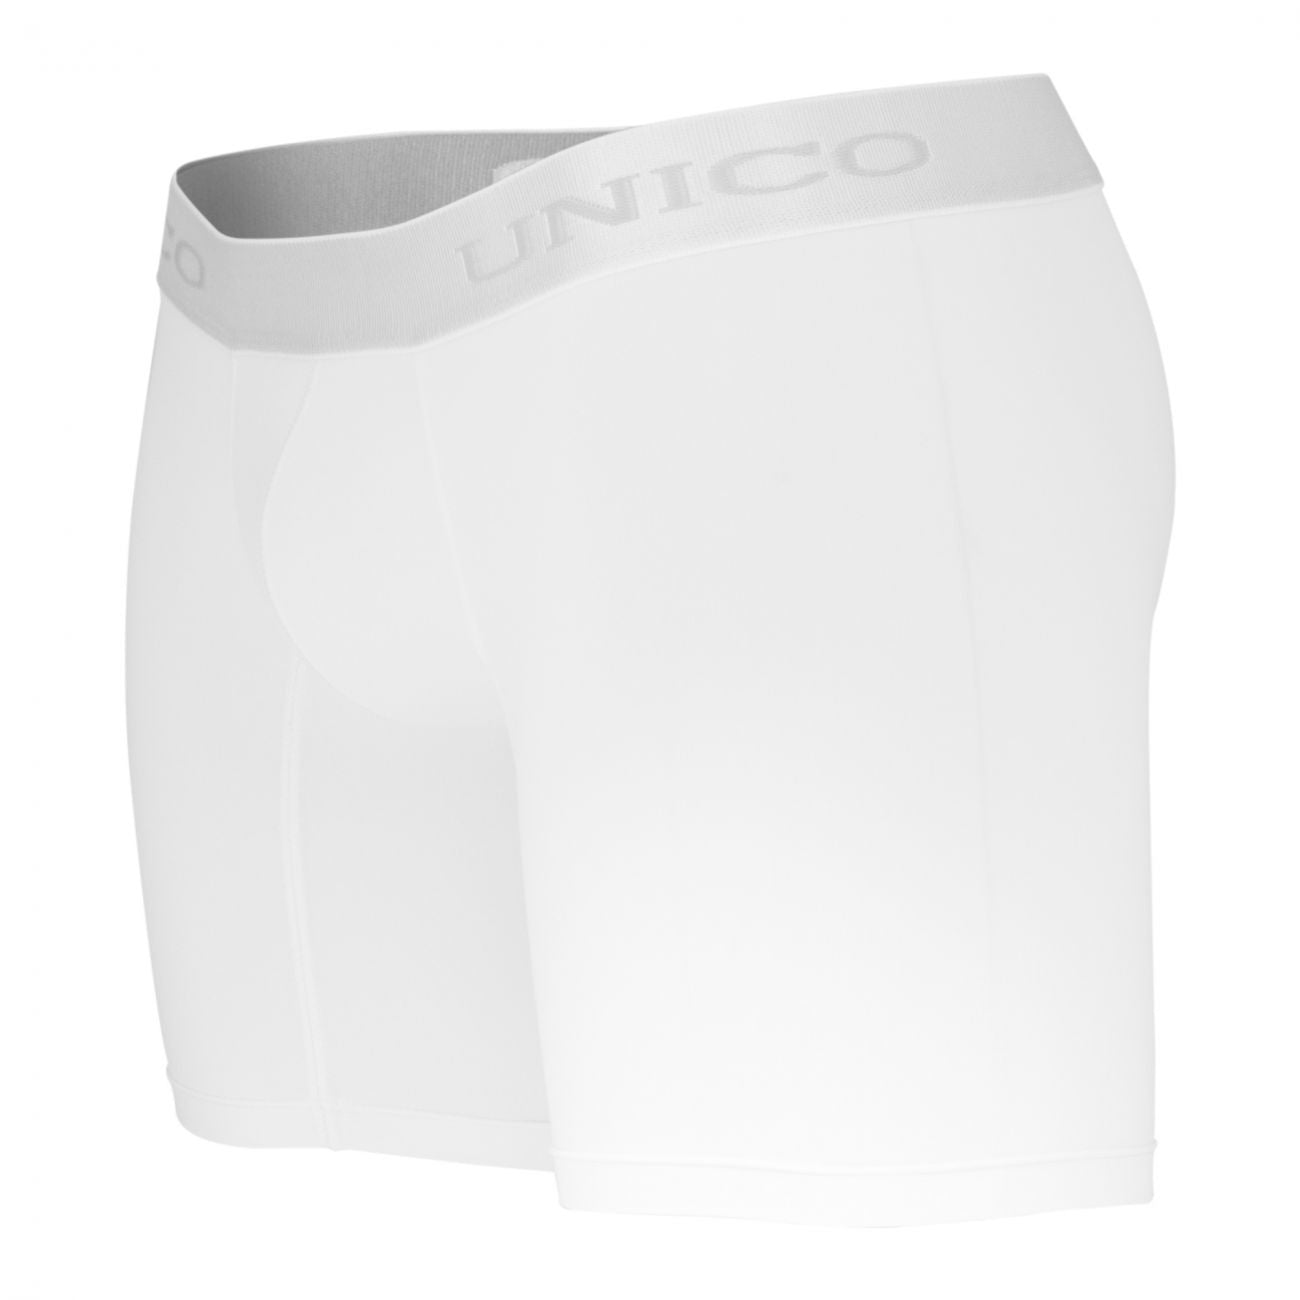 Unico (1212010020300) Boxer Briefs Cristalino Microfiber